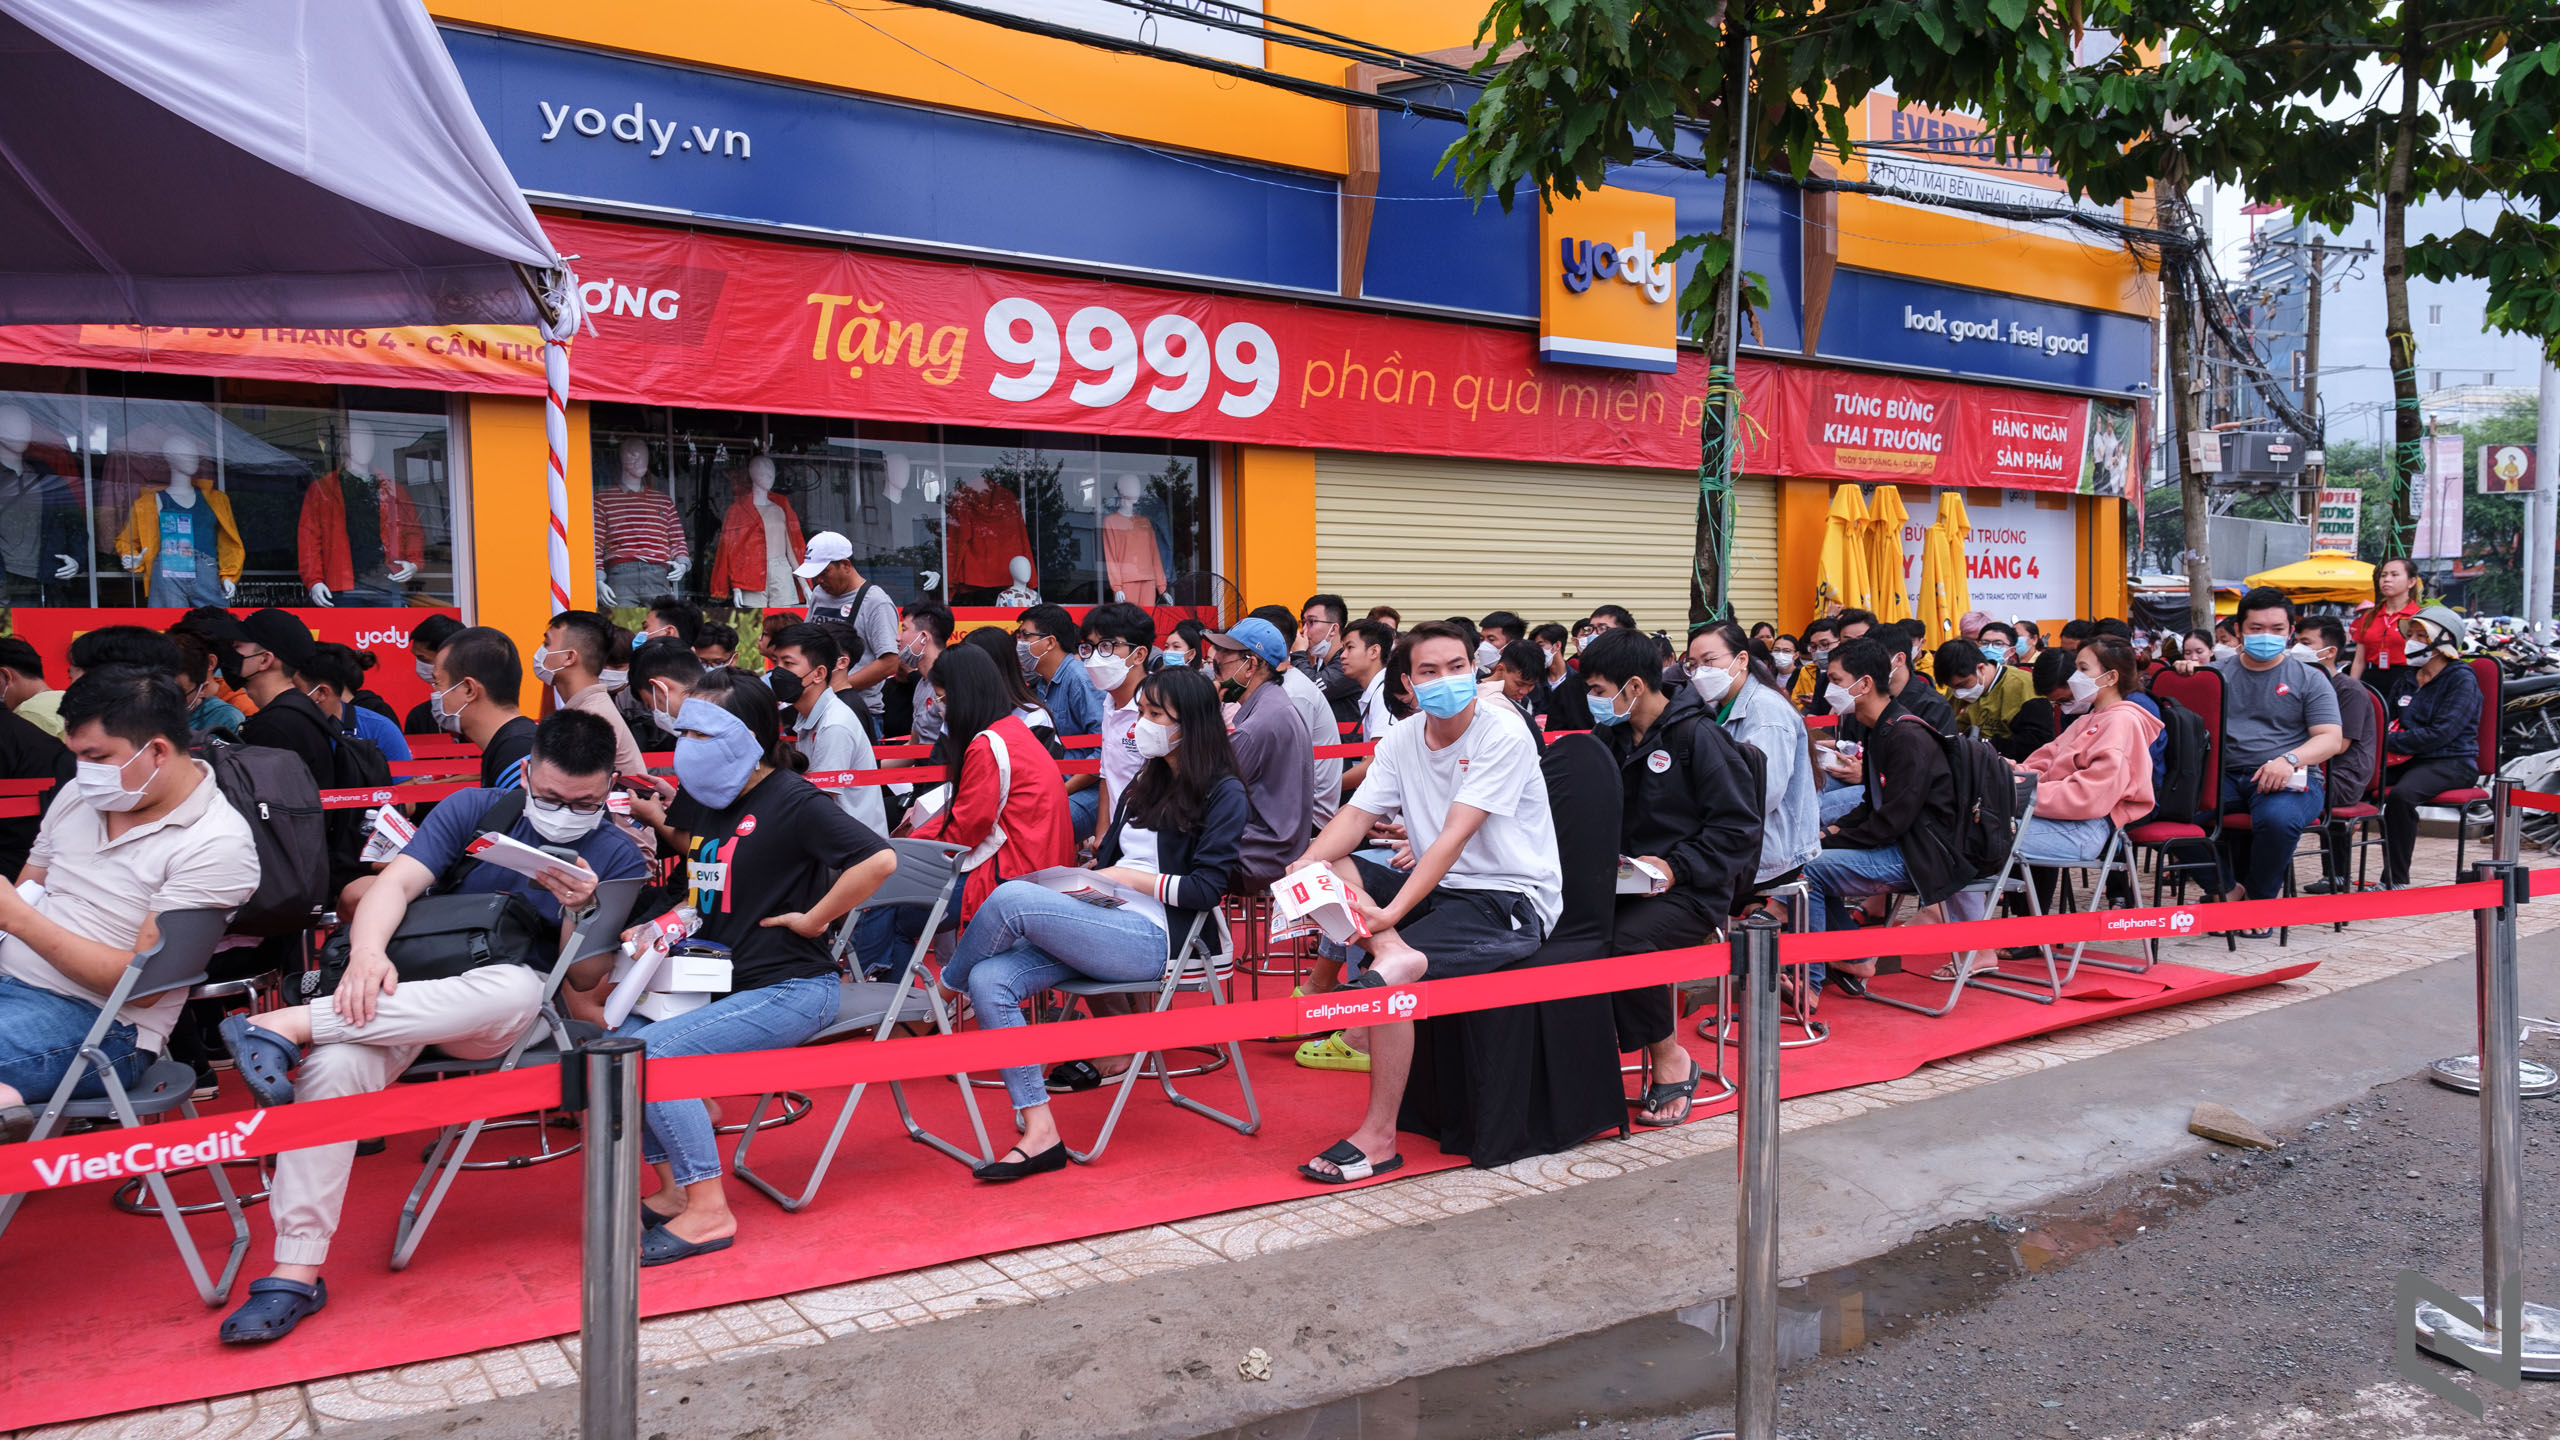 CellphoneS khai trương cửa hàng mới tại thành phố Cần Thơ, đạt cột mốc 100 cửa hàng toàn quốc